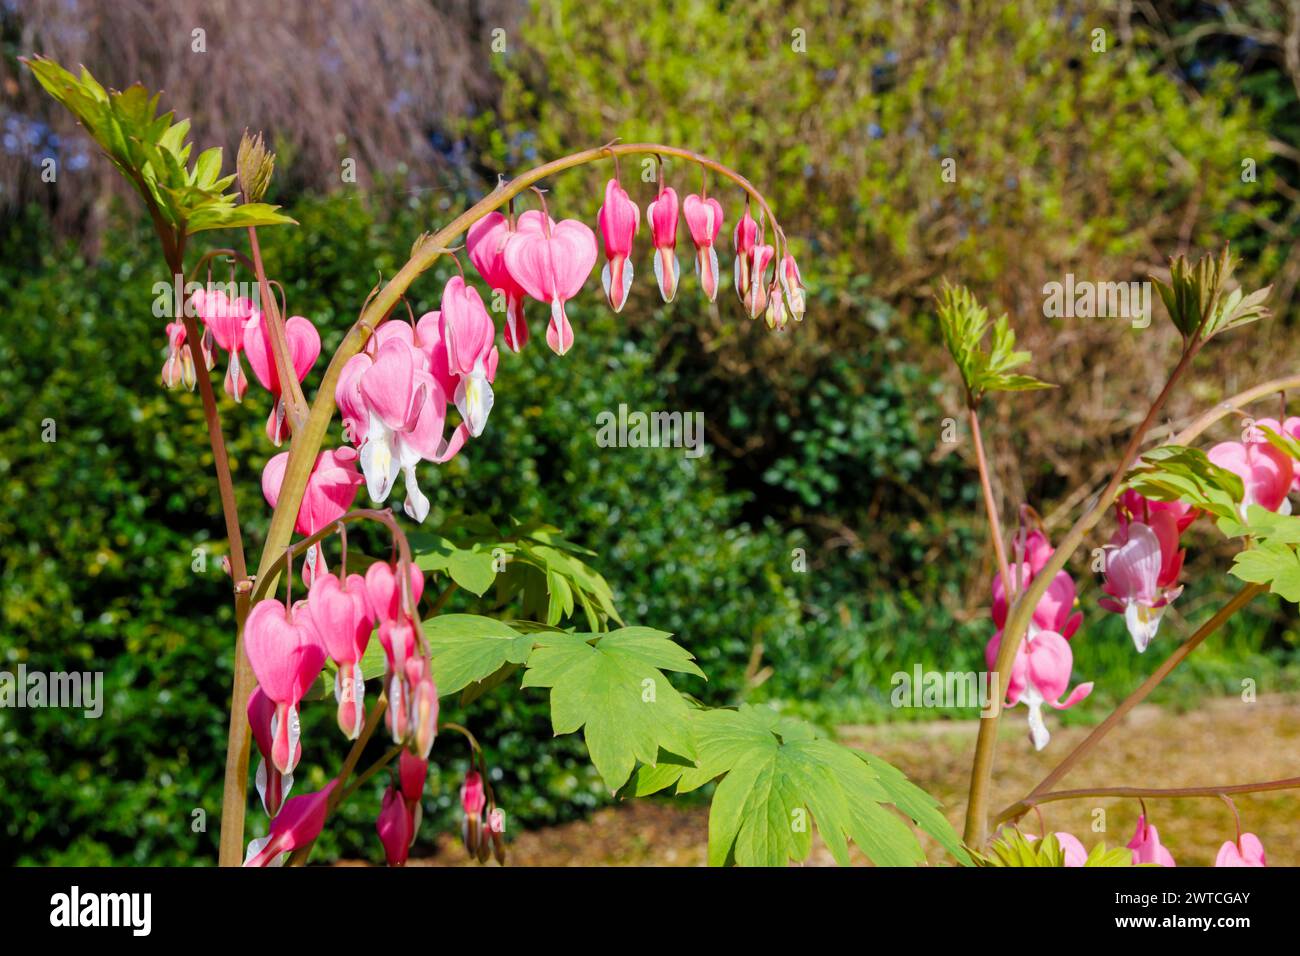 Fiori rosa a forma di cuore e petalo bianco a goccia di Lamprocapnos spectabilis (precedentemente Dicentra spectablilis) che sanguina la pianta del cuore in primavera Foto Stock